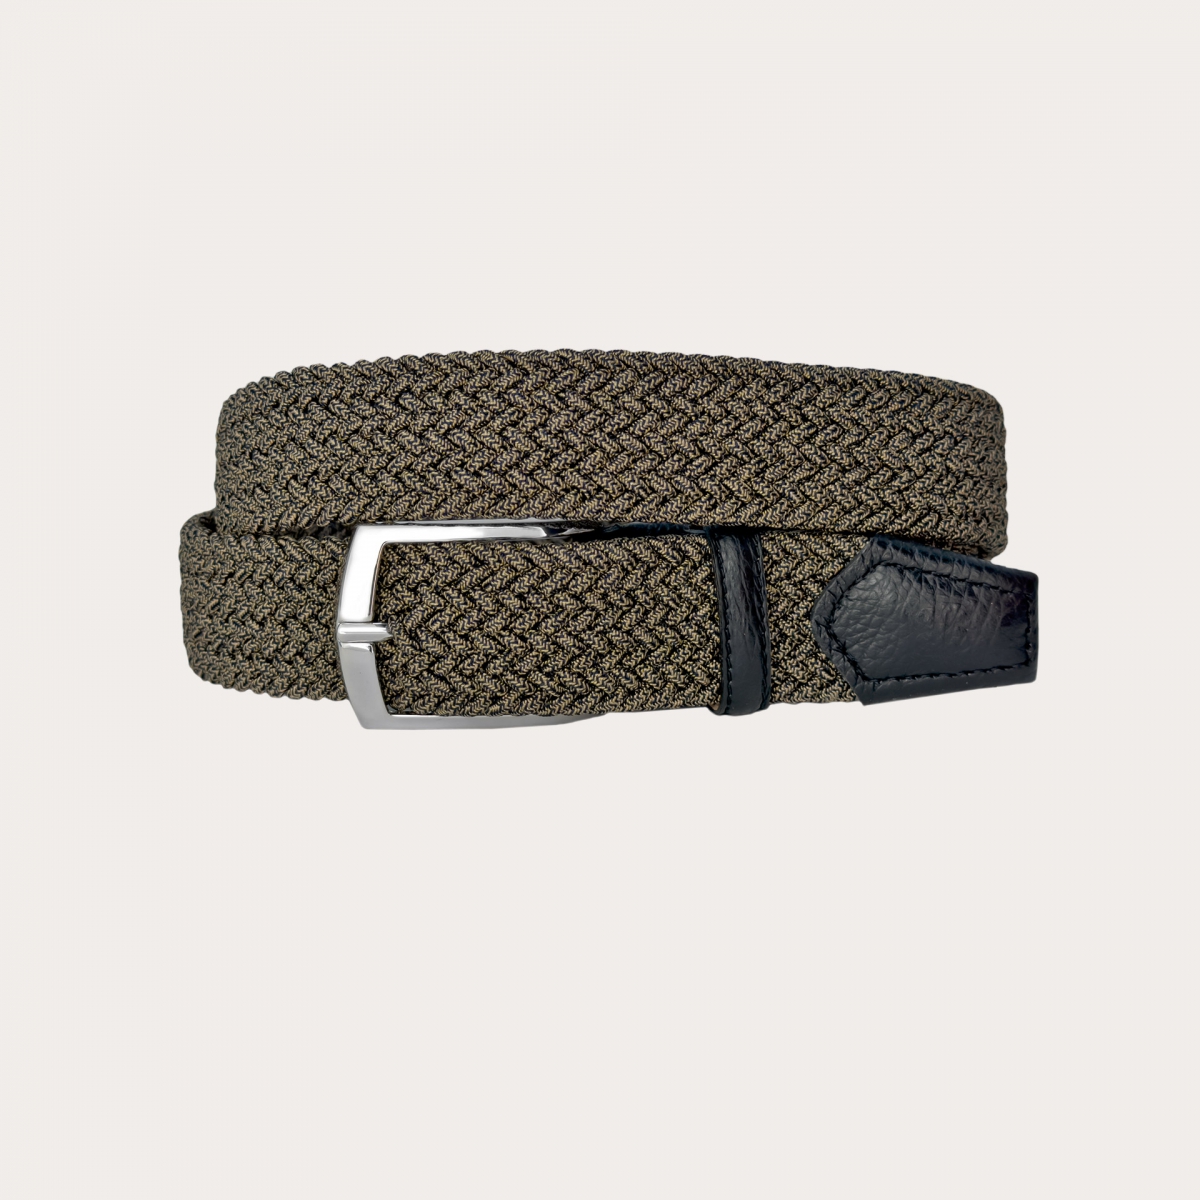 Black and beige melange braided elastic belt with nickel-free buckle